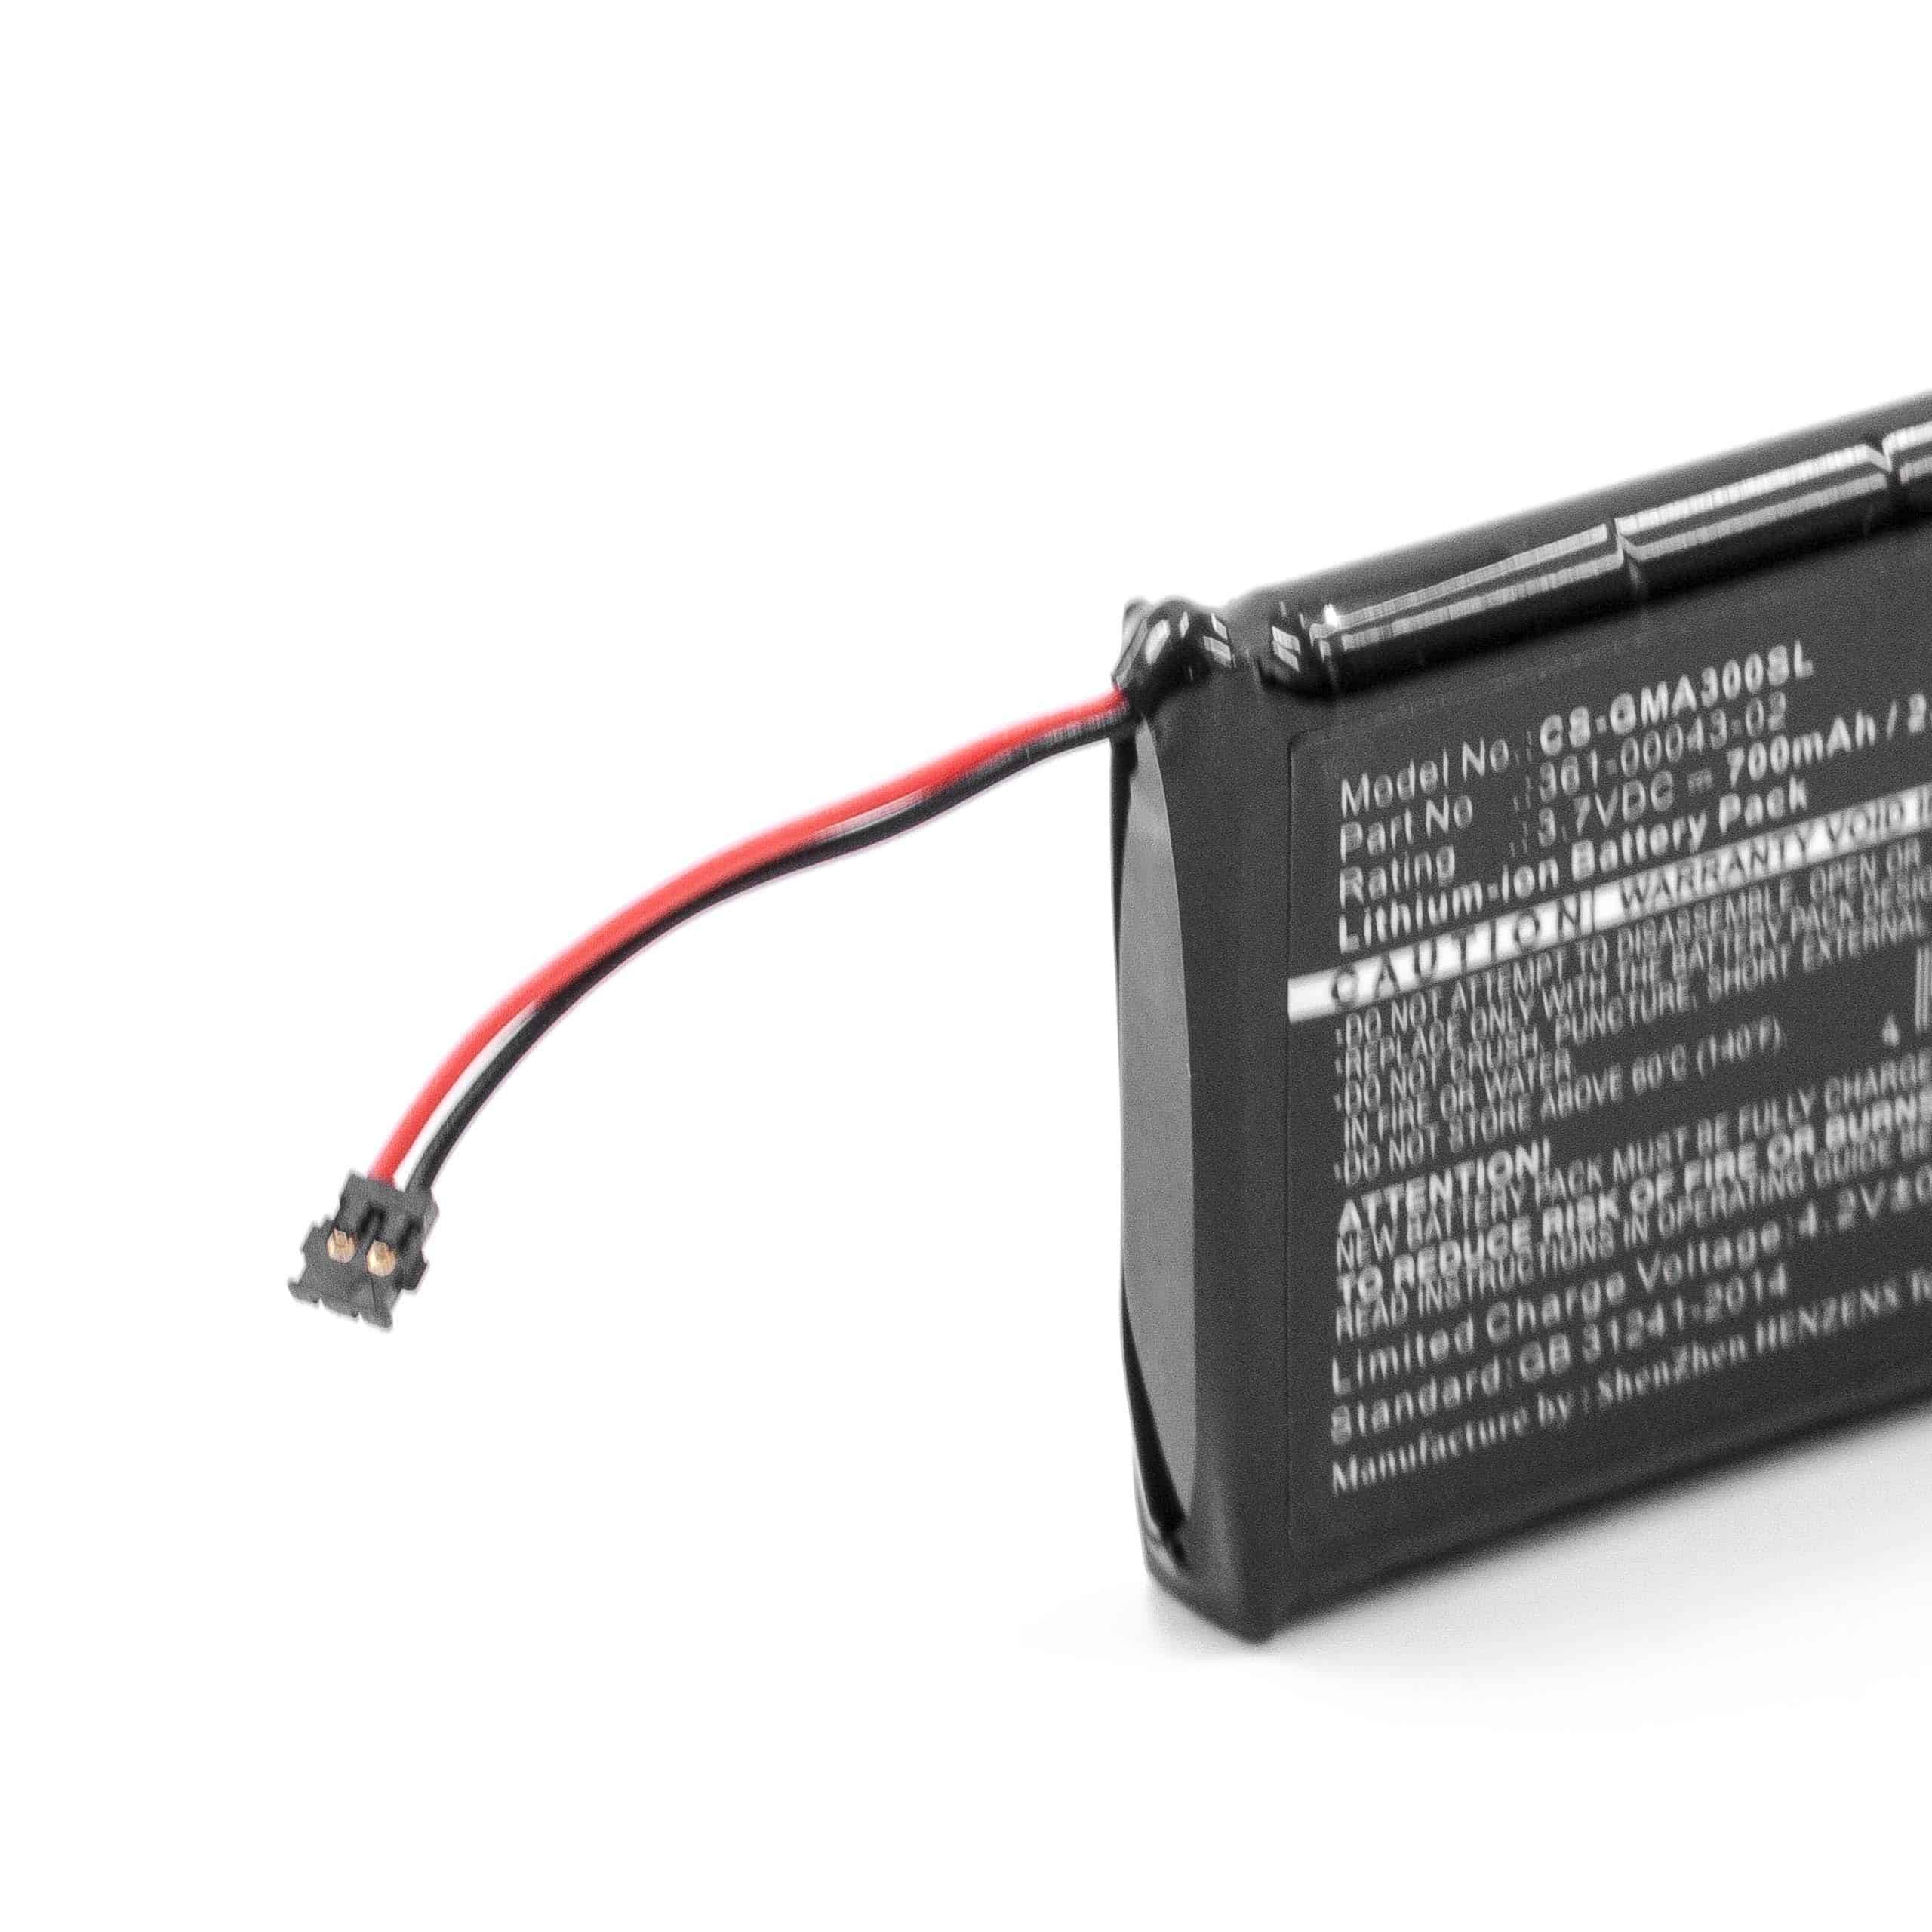 Batterie remplace Garmin 361-00043-02 pour navigation GPS de golf - 700mAh 3,7V Li-ion